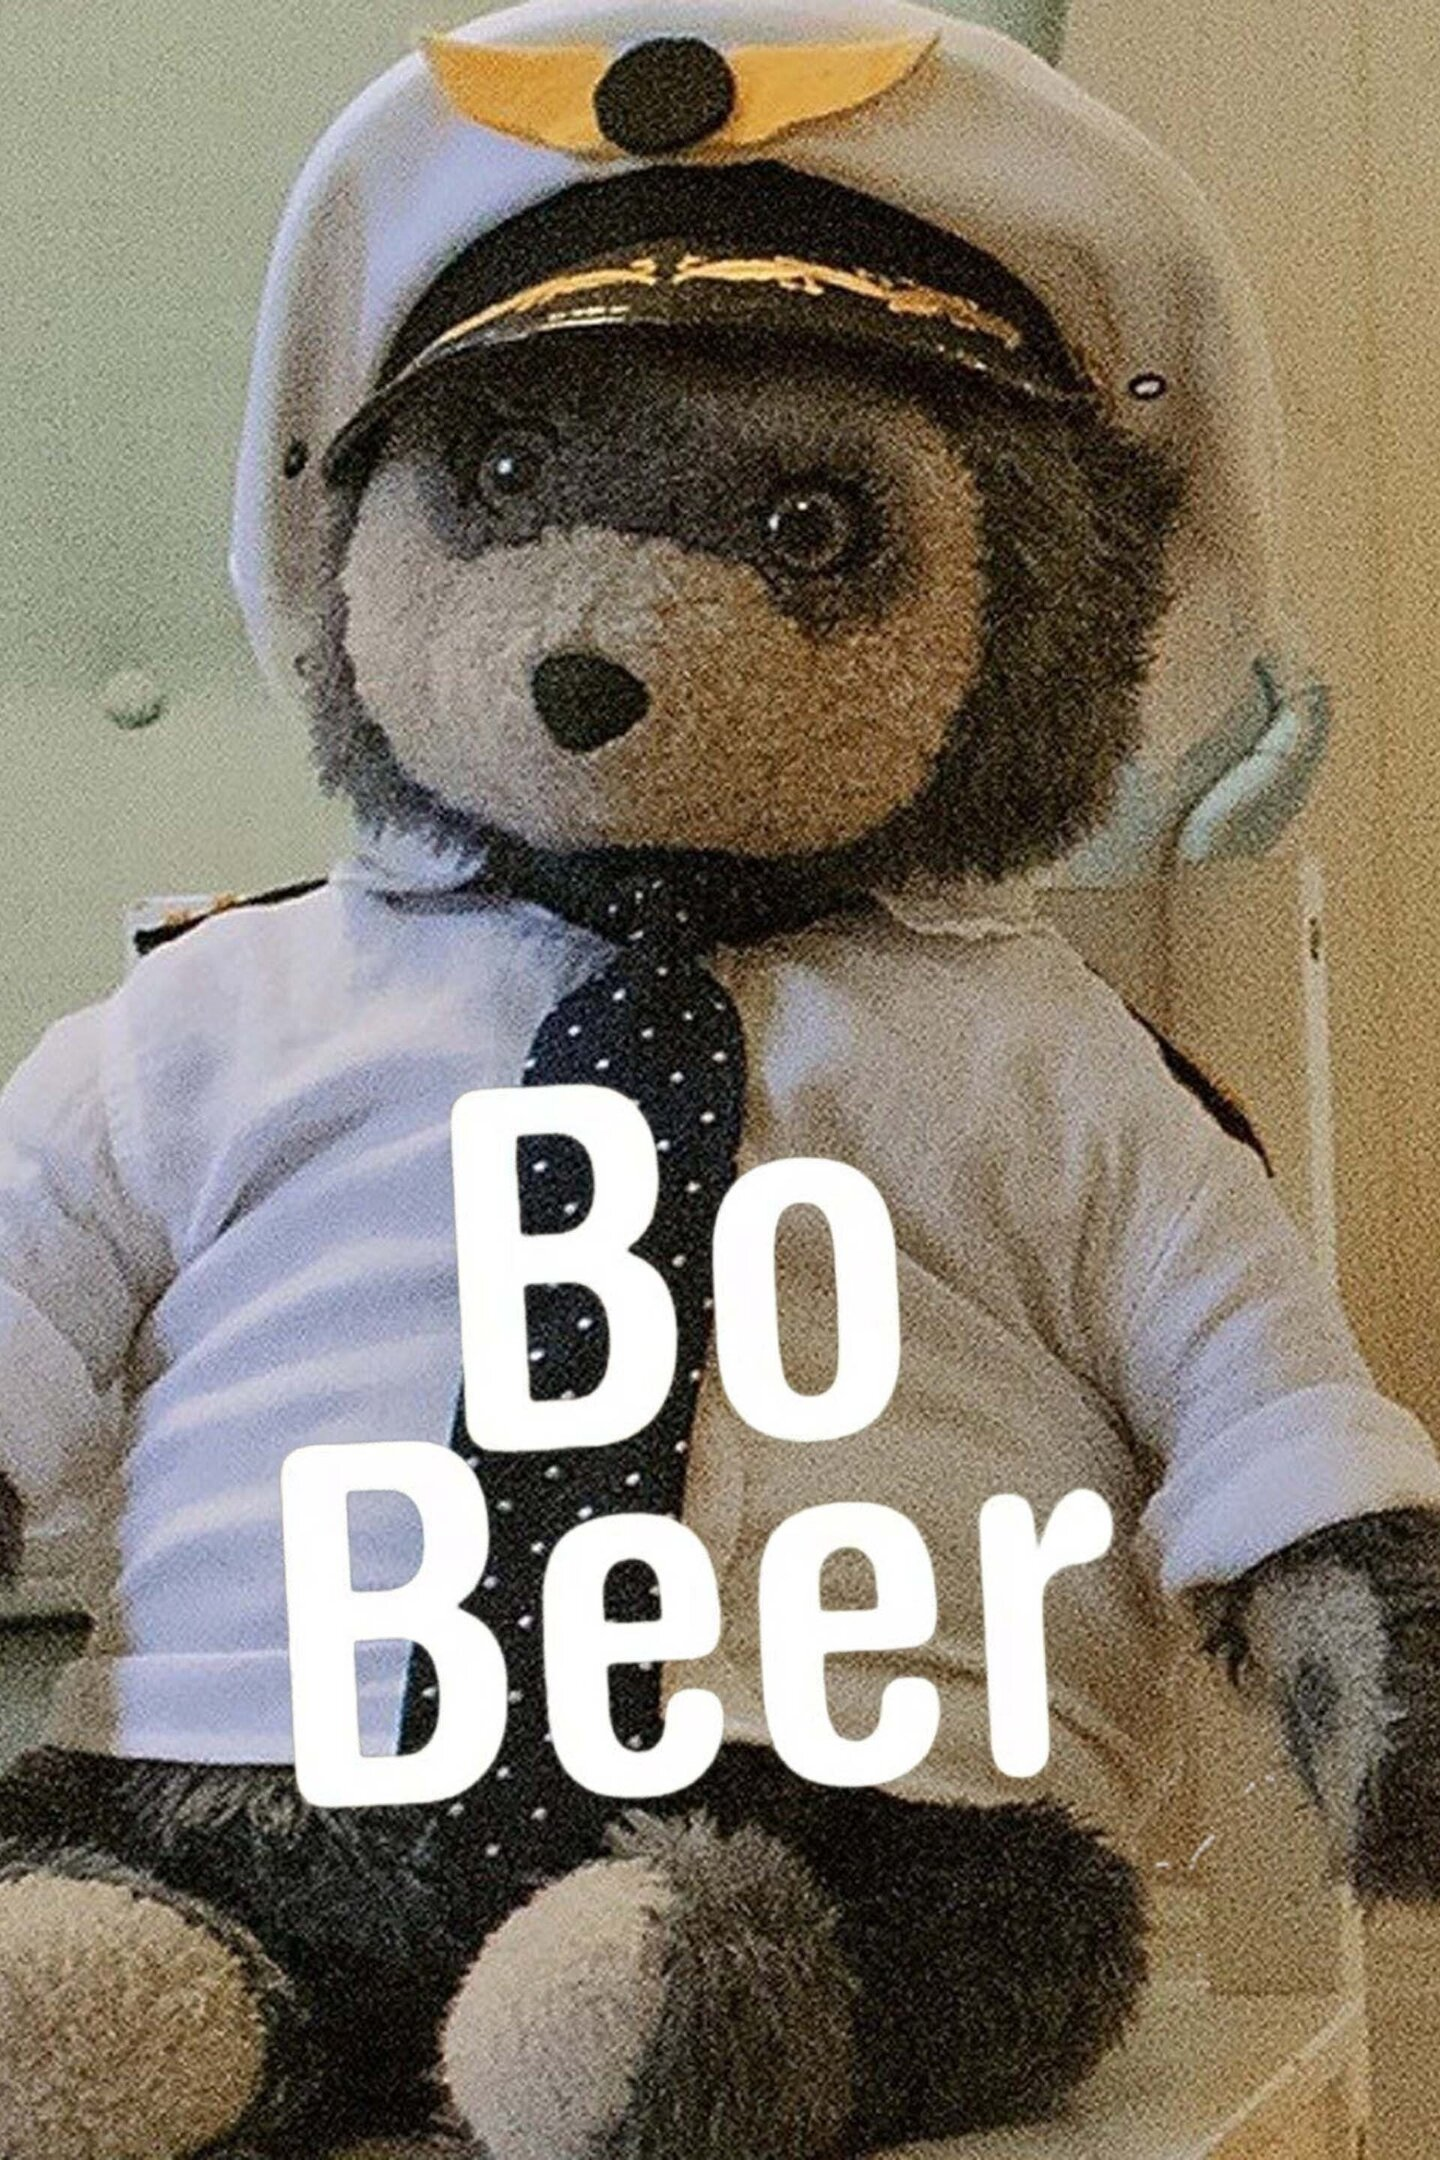 Bo Beer